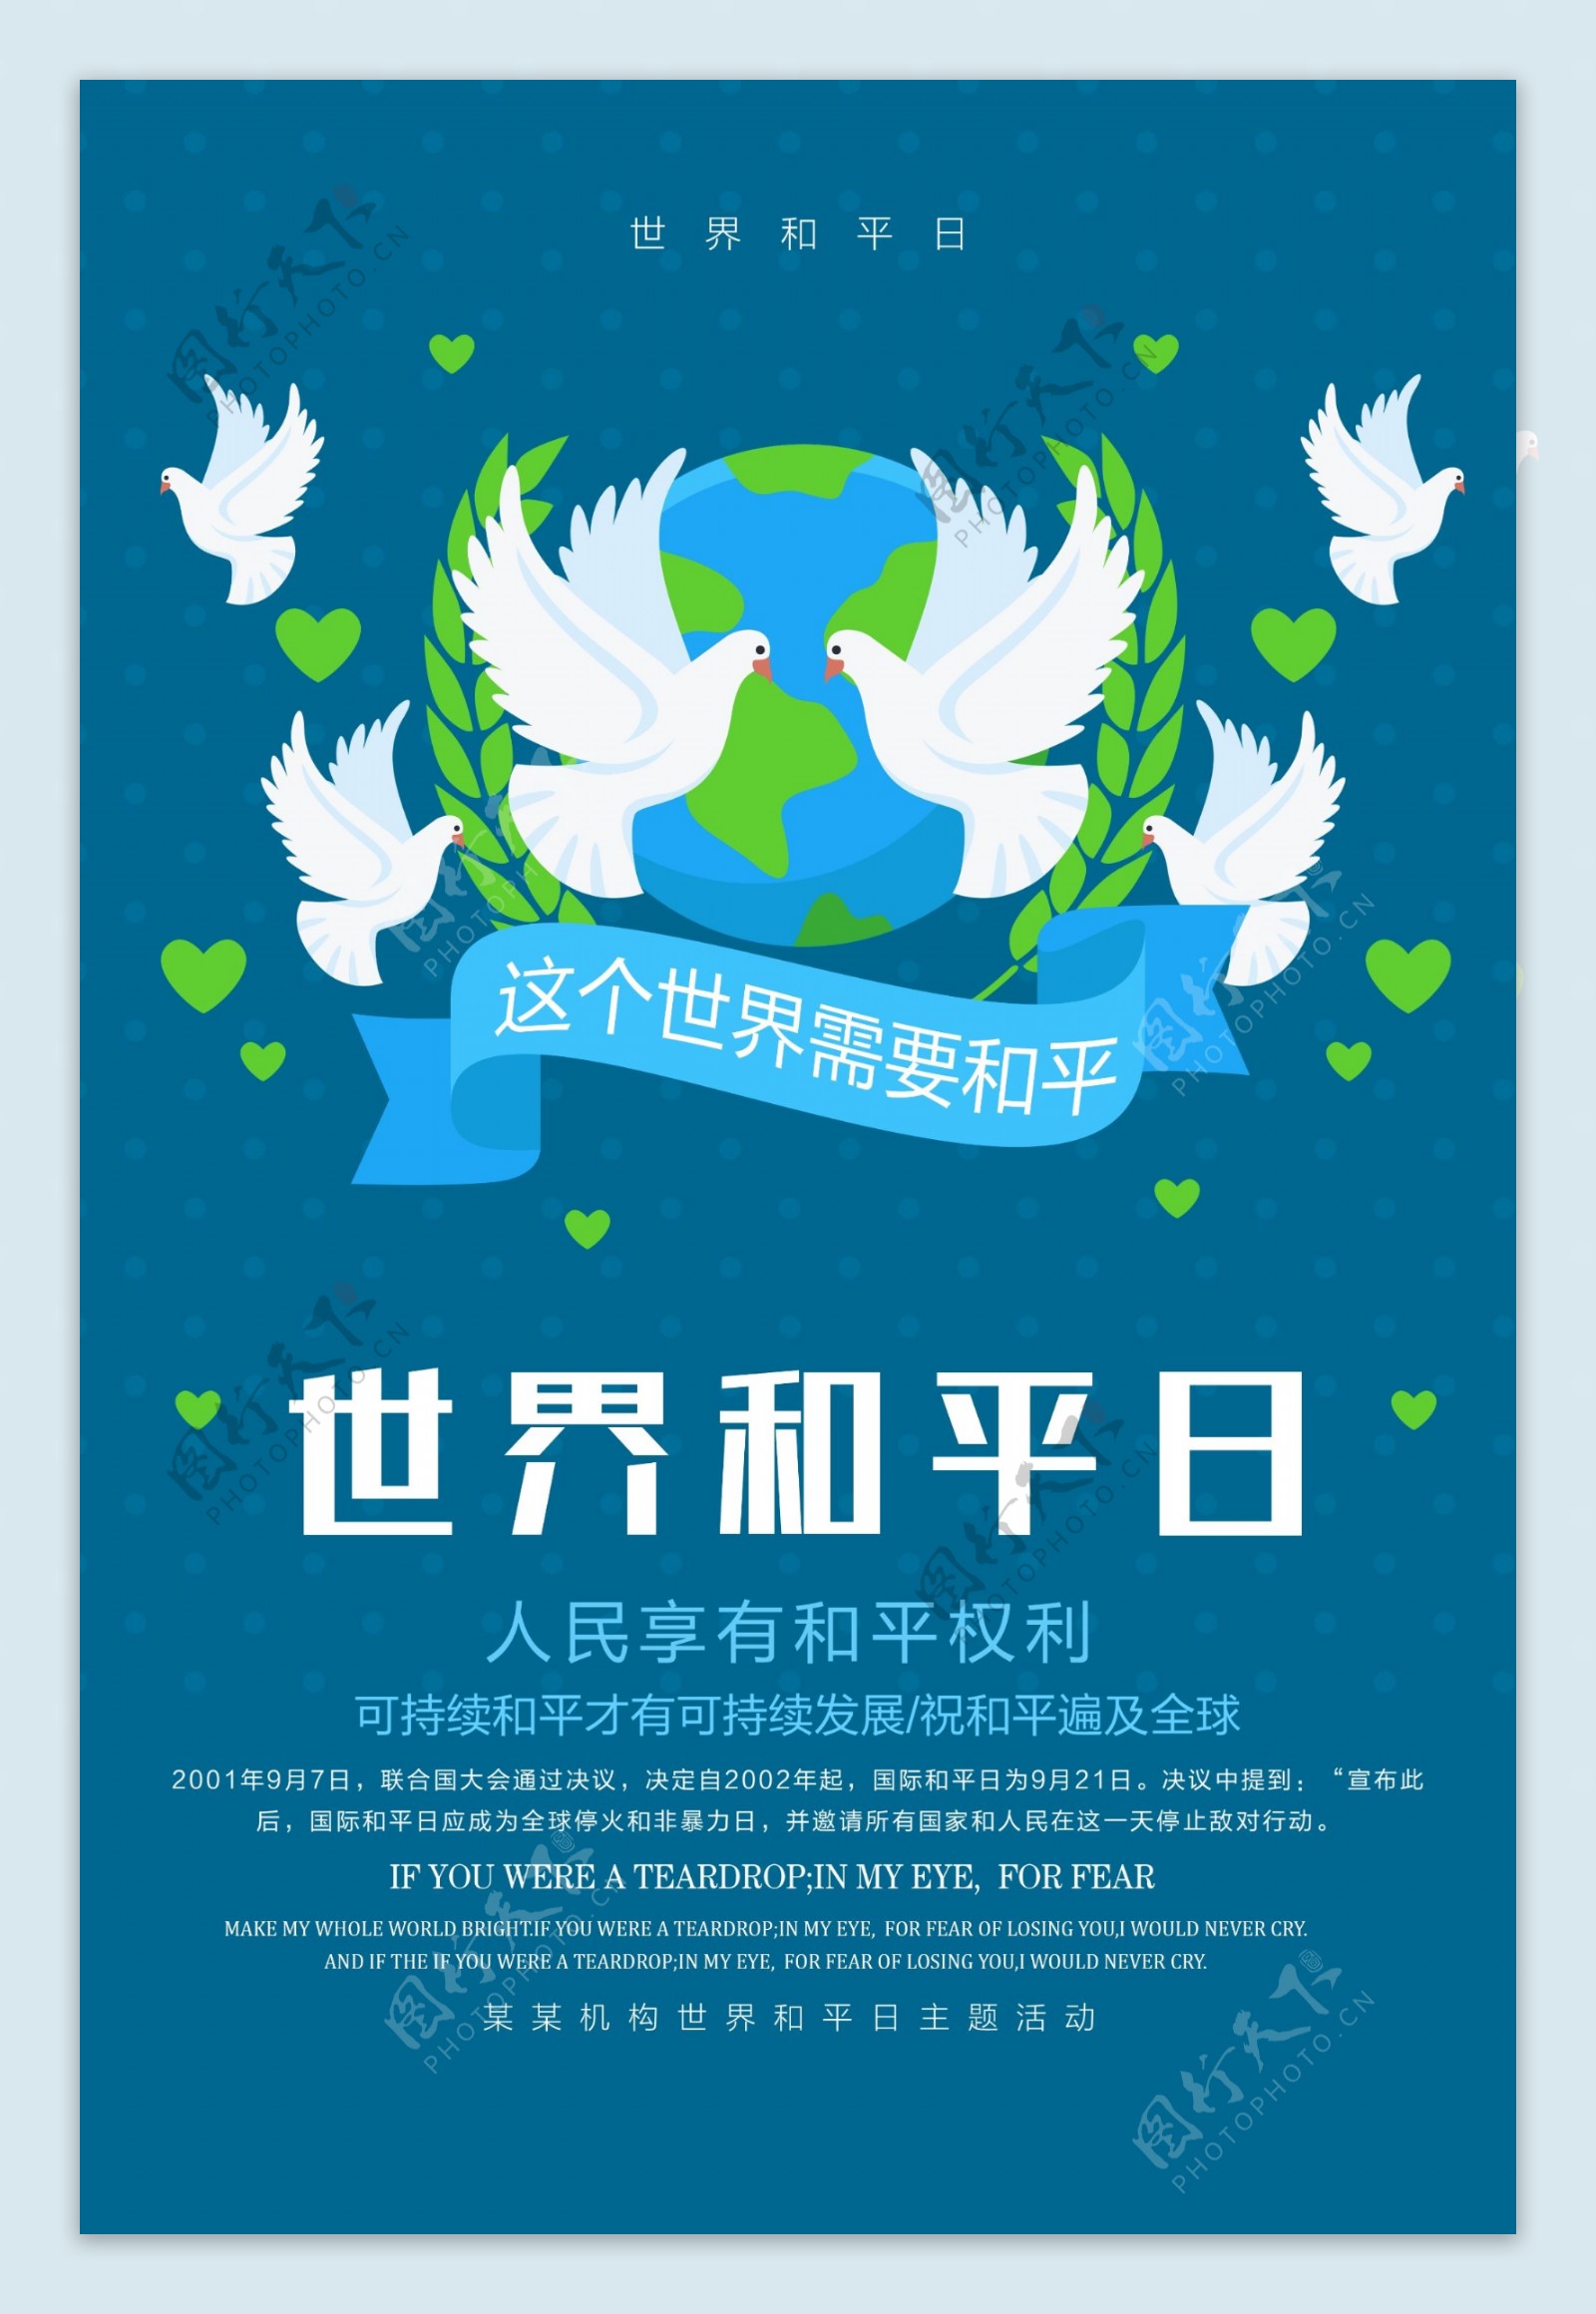 蓝色清新简约世界和平日宣传海报设计